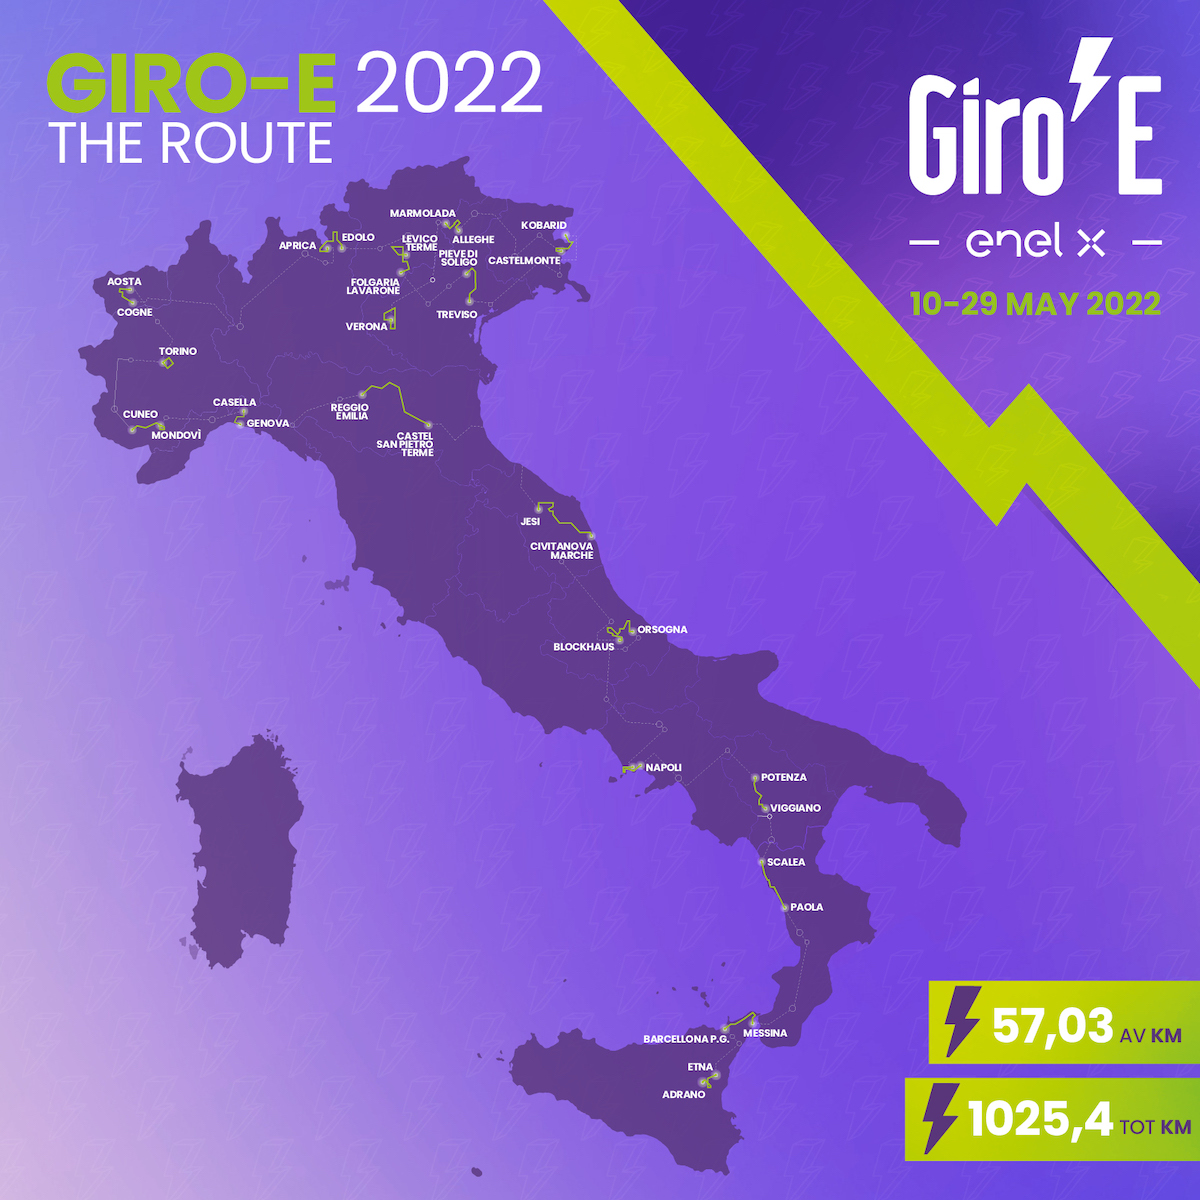 Giro-E 2022